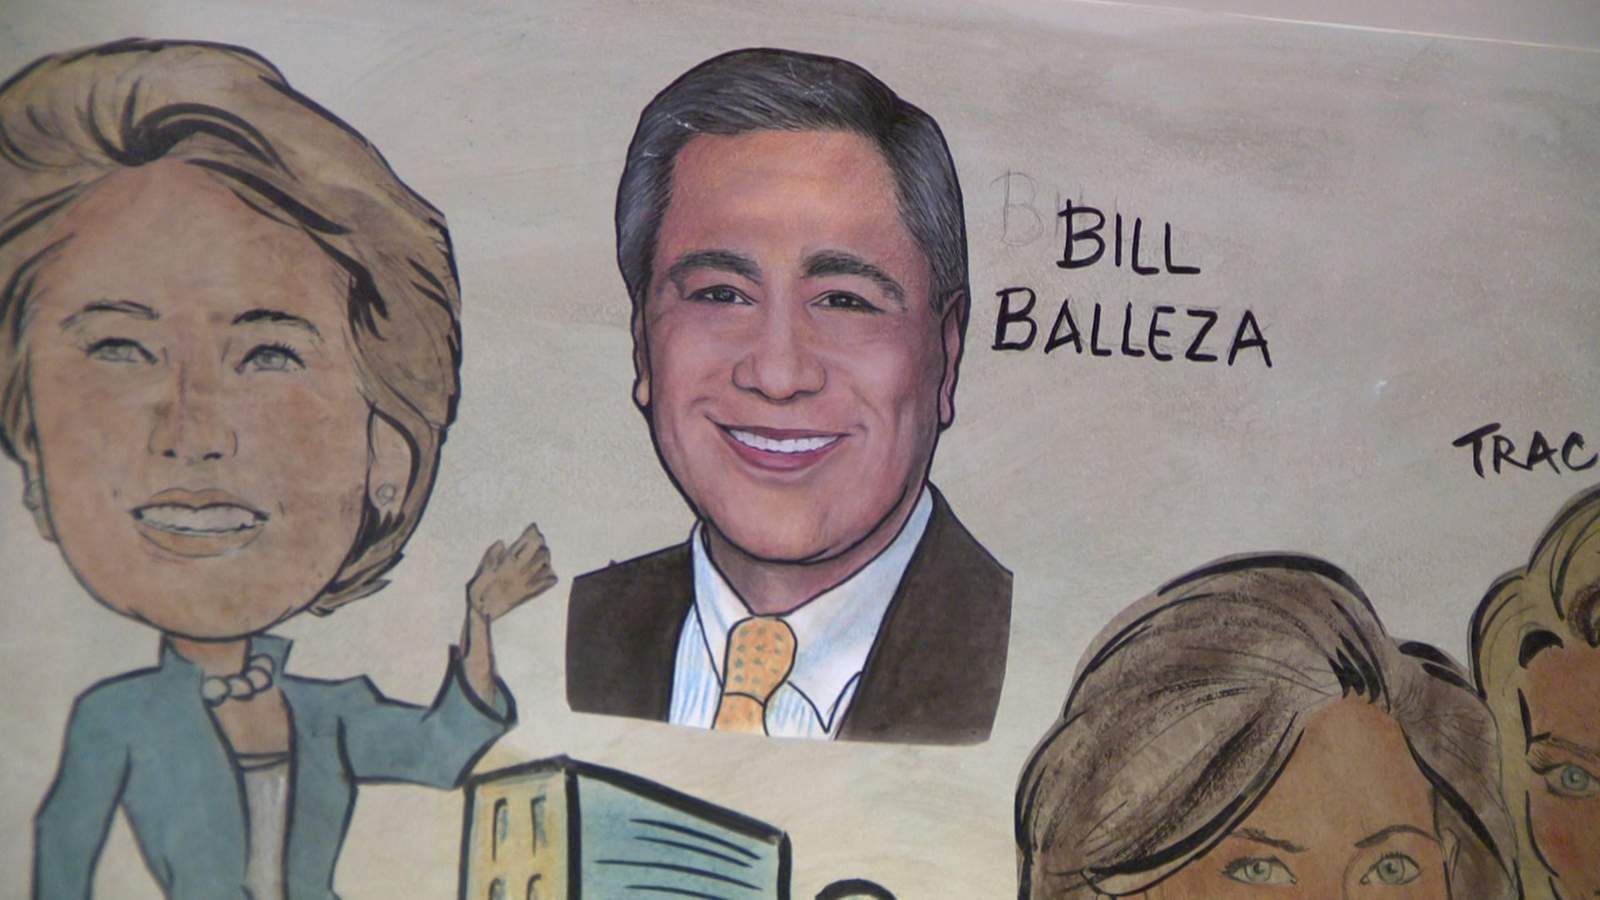 Mayor Sylvester Turner declares today as ‘Bill Balleza Day’ honoring KPRC 2 anchor Bill Balleza